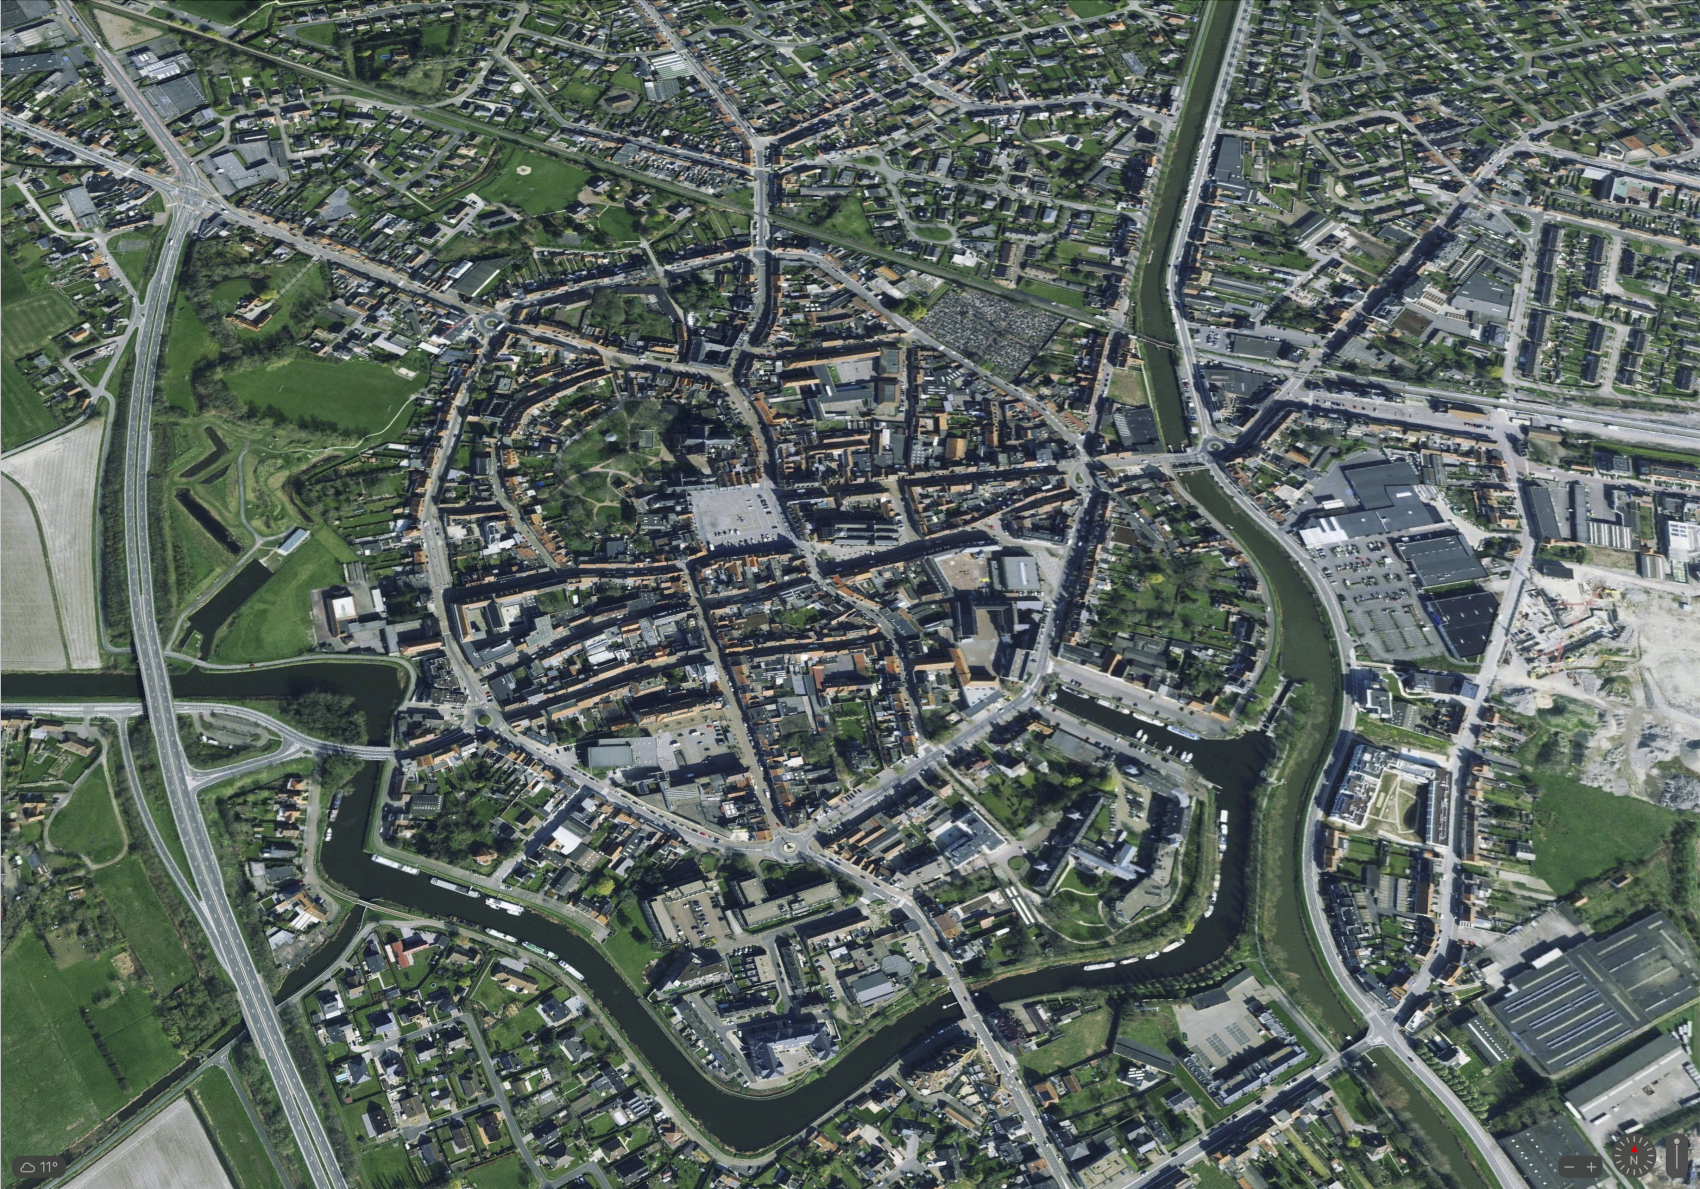 Luchtfoto van de stad Veurne